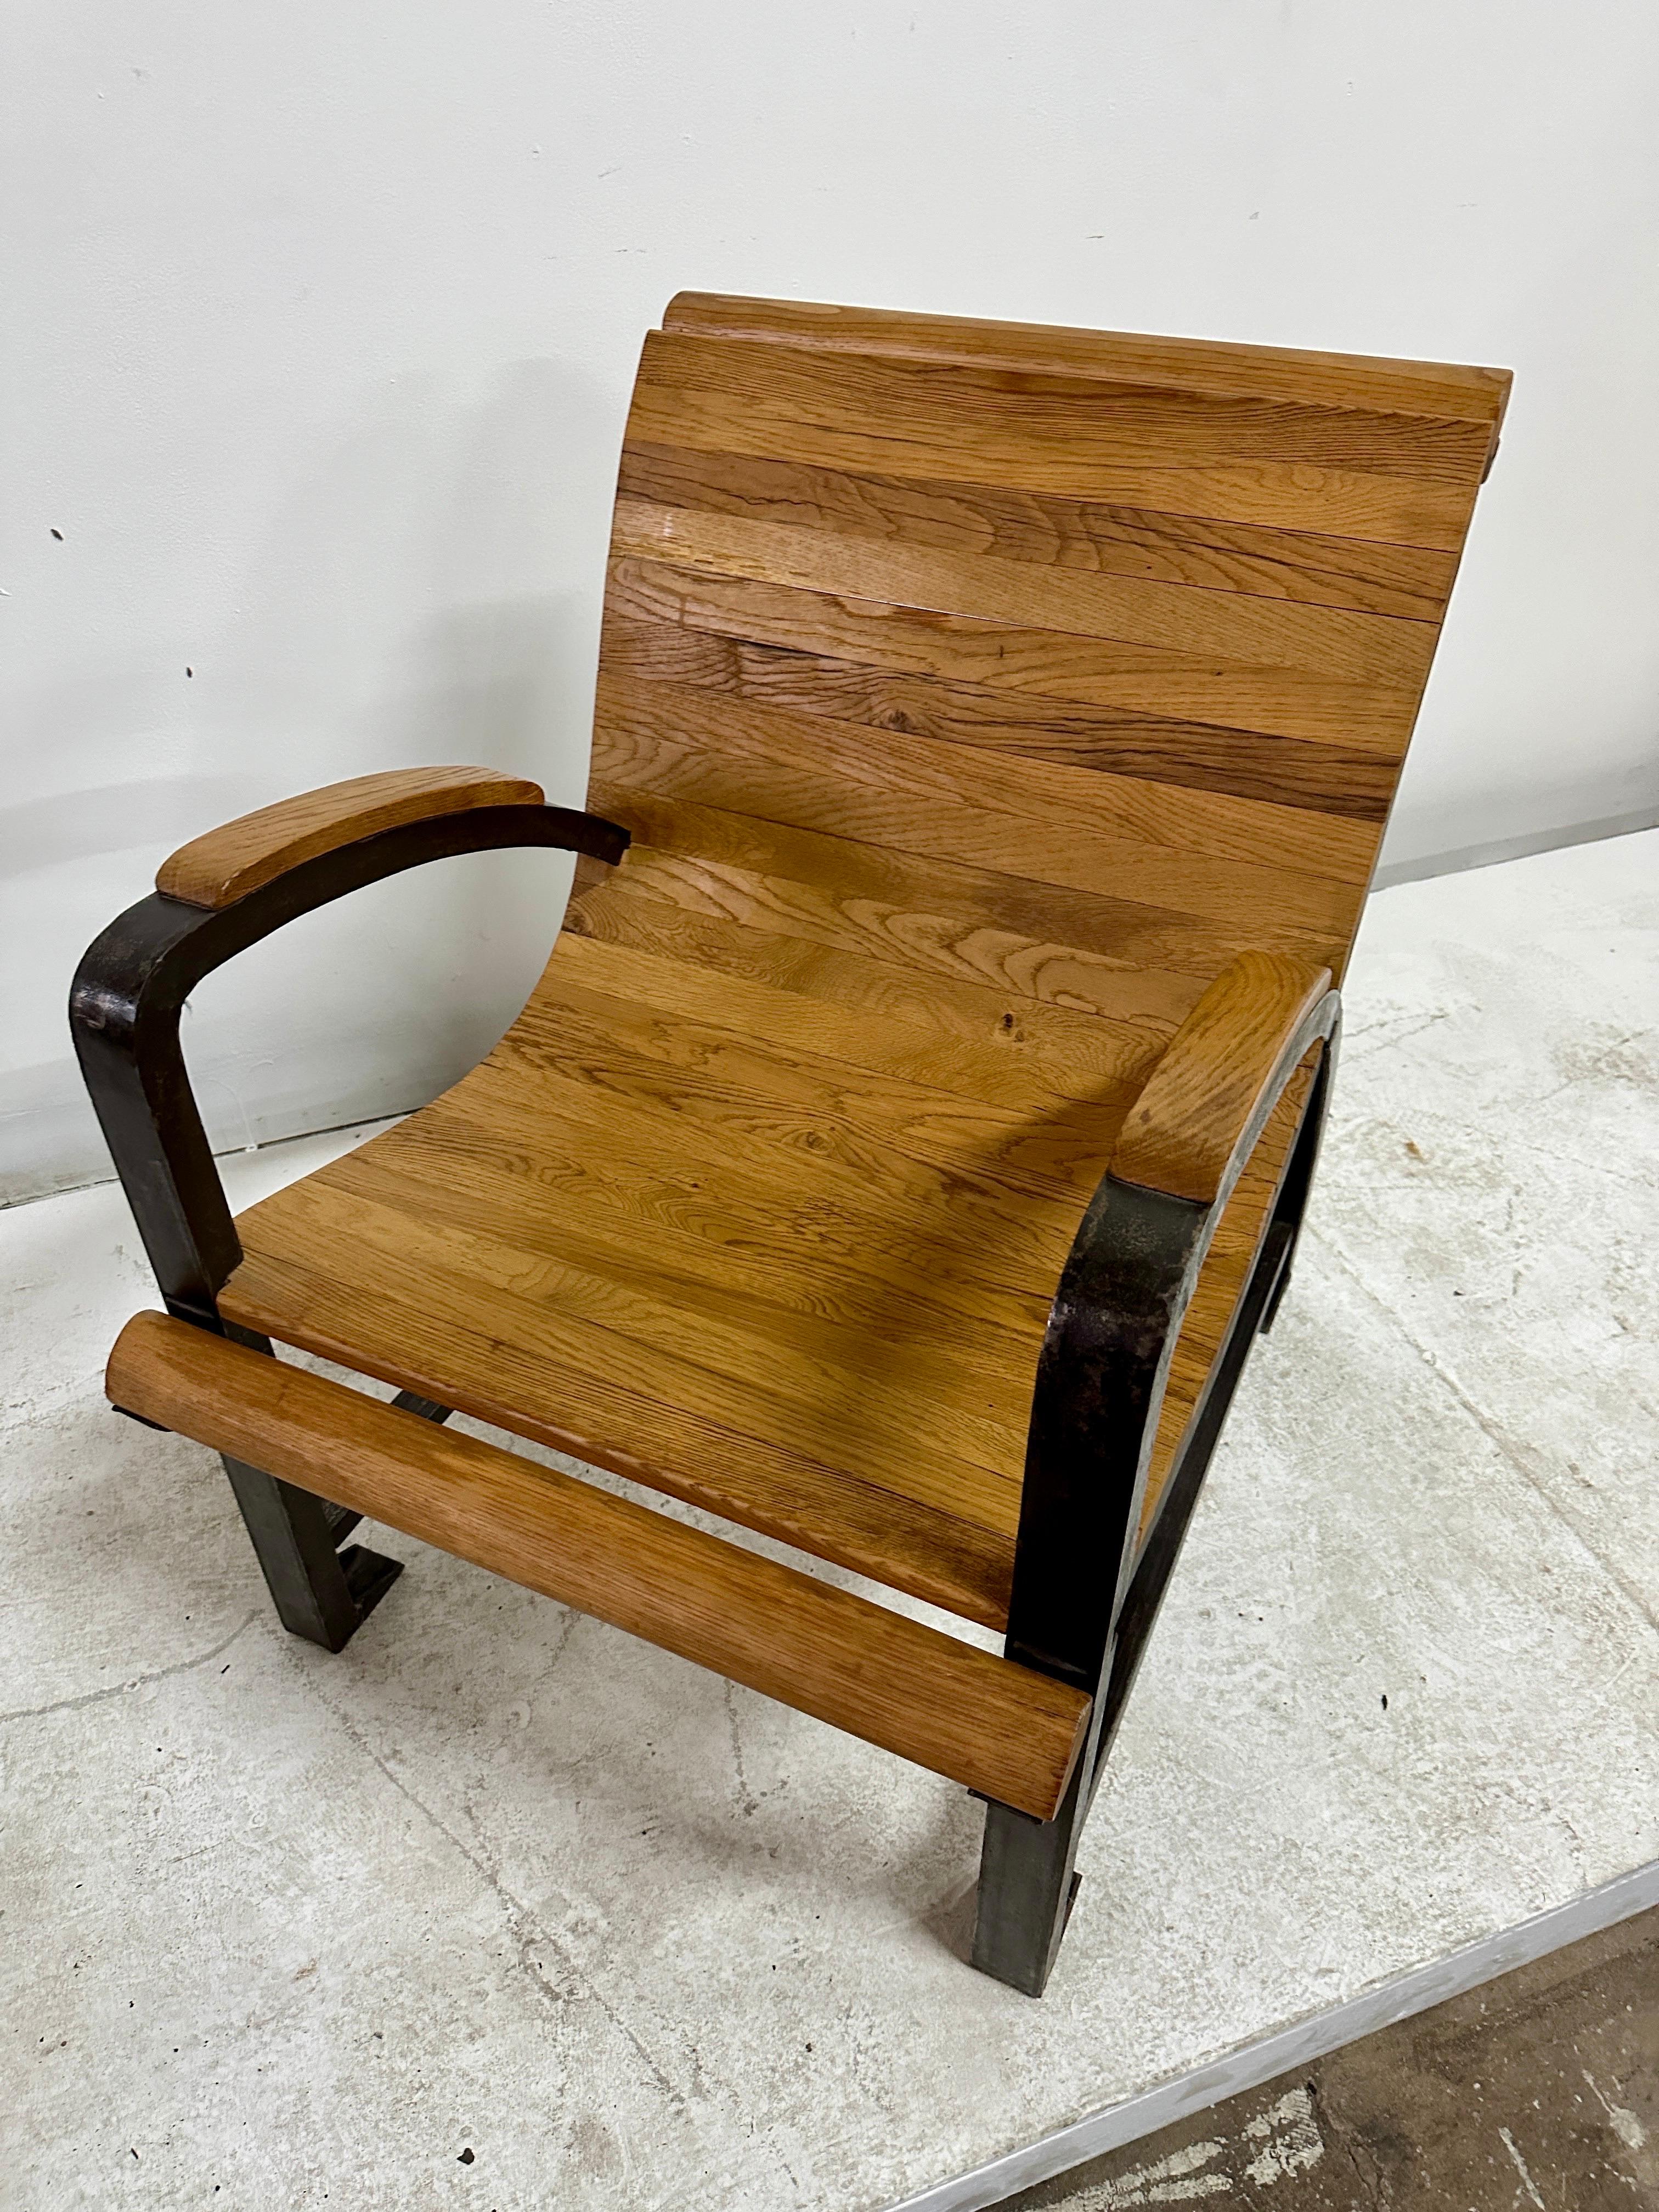 Dies ist eine sehr einzigartige Französisch Industrie Sessel, die sehr schwer und gut verarbeitet ist.  Latten aus Naturholz, gerollte Holzleisten oben und unten, verankerte Füße und viele weitere Details.  